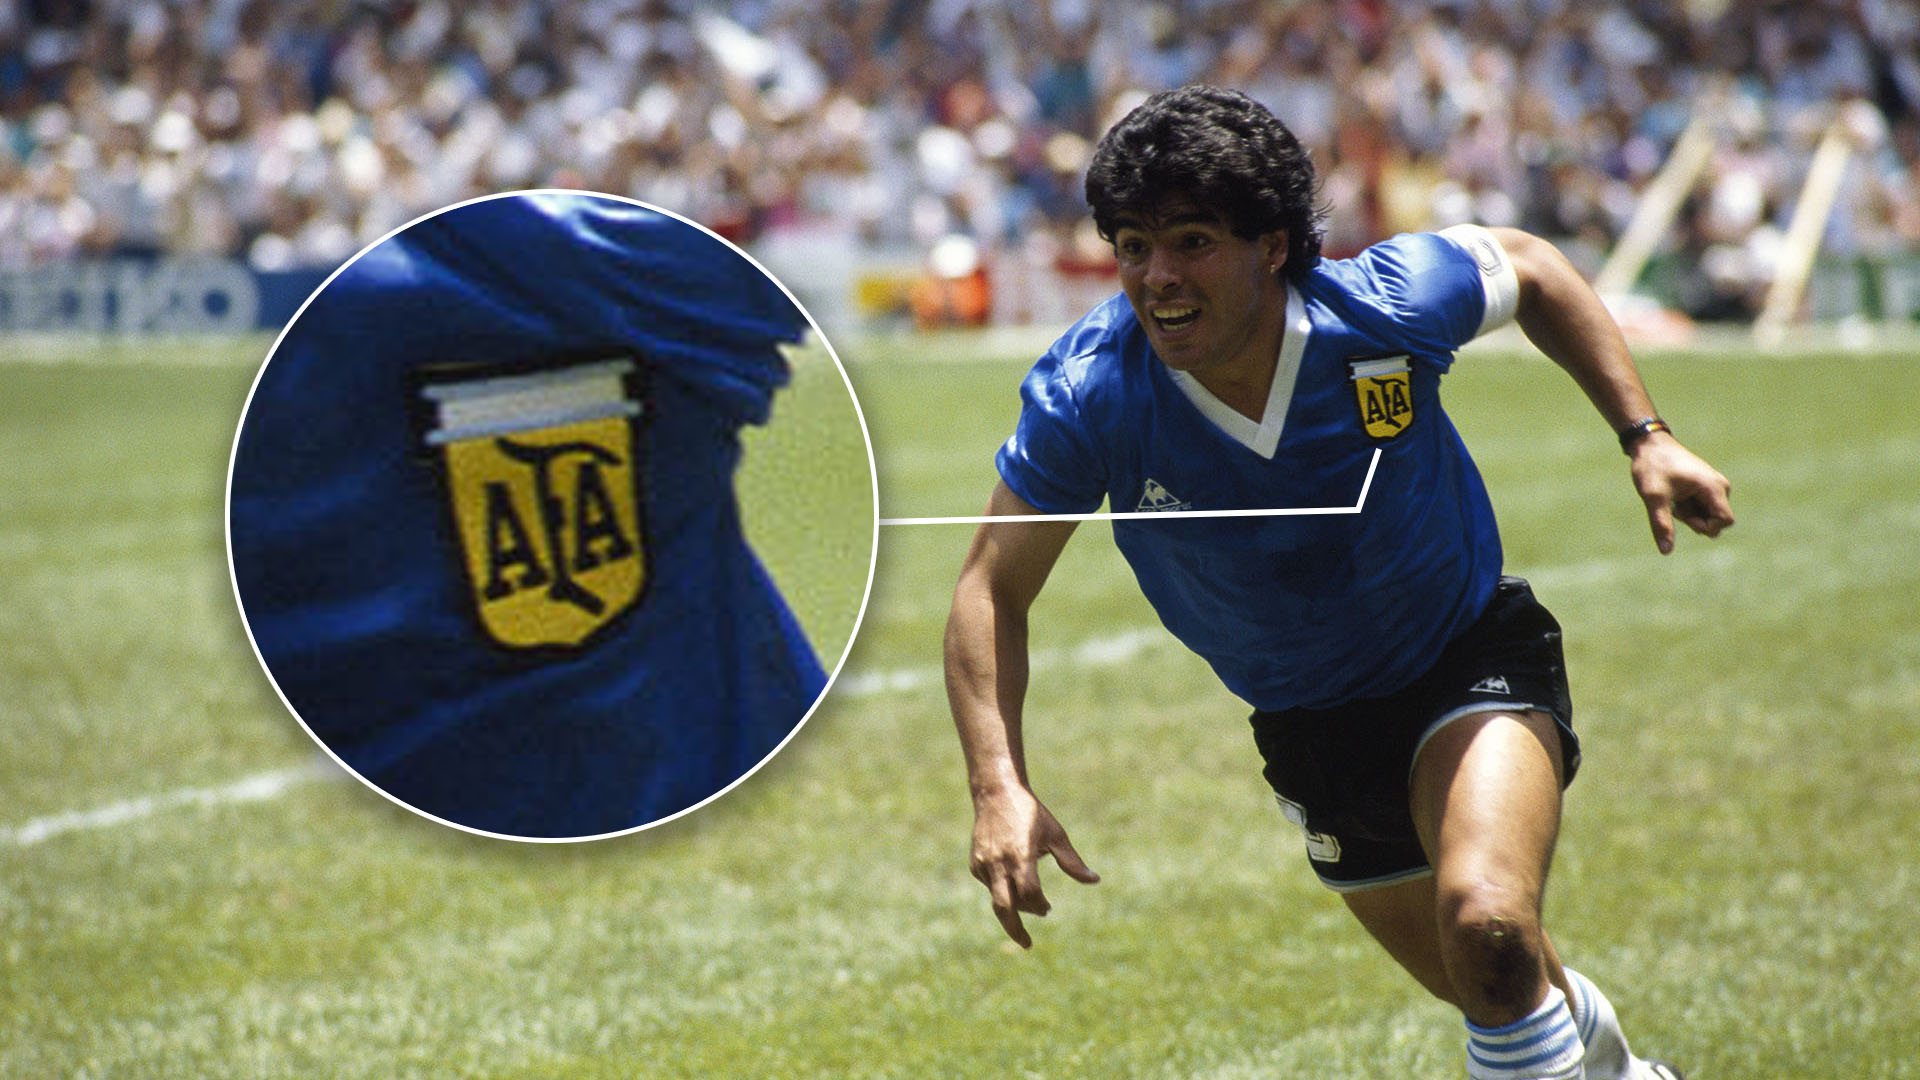 El grito de gol de Diego Armando Maradona ante Inglaterra (Foto: Jean-Yves Ruszniewski/Corbis/VCG via Getty Images)